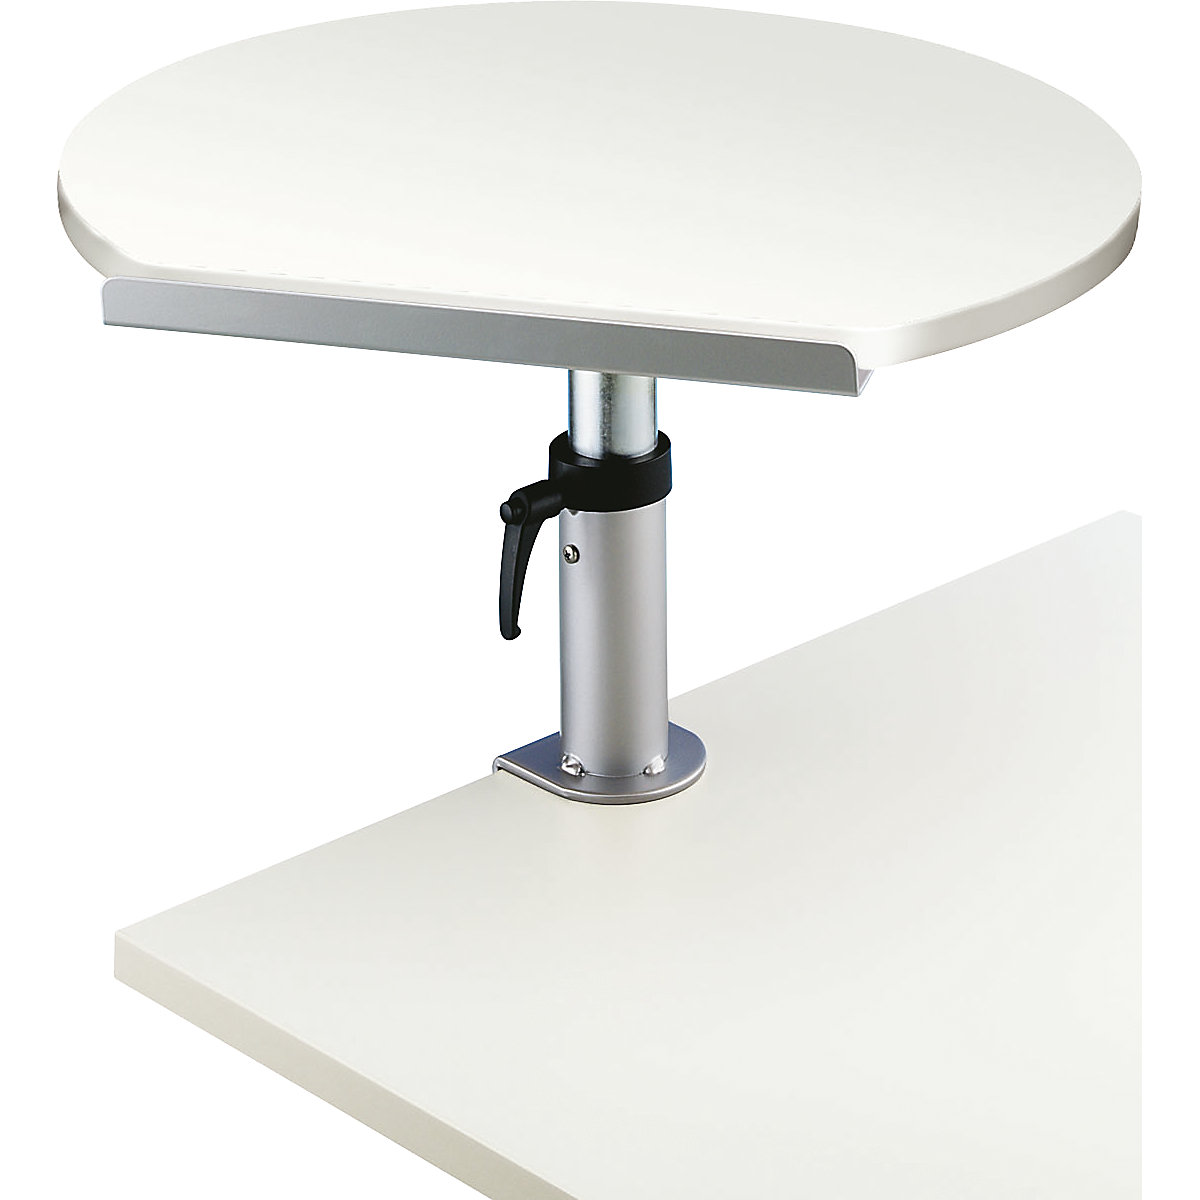 Pupitre ergonomique – MAUL, l x p 600 x 520 mm, hauteur réglable, blanc-4